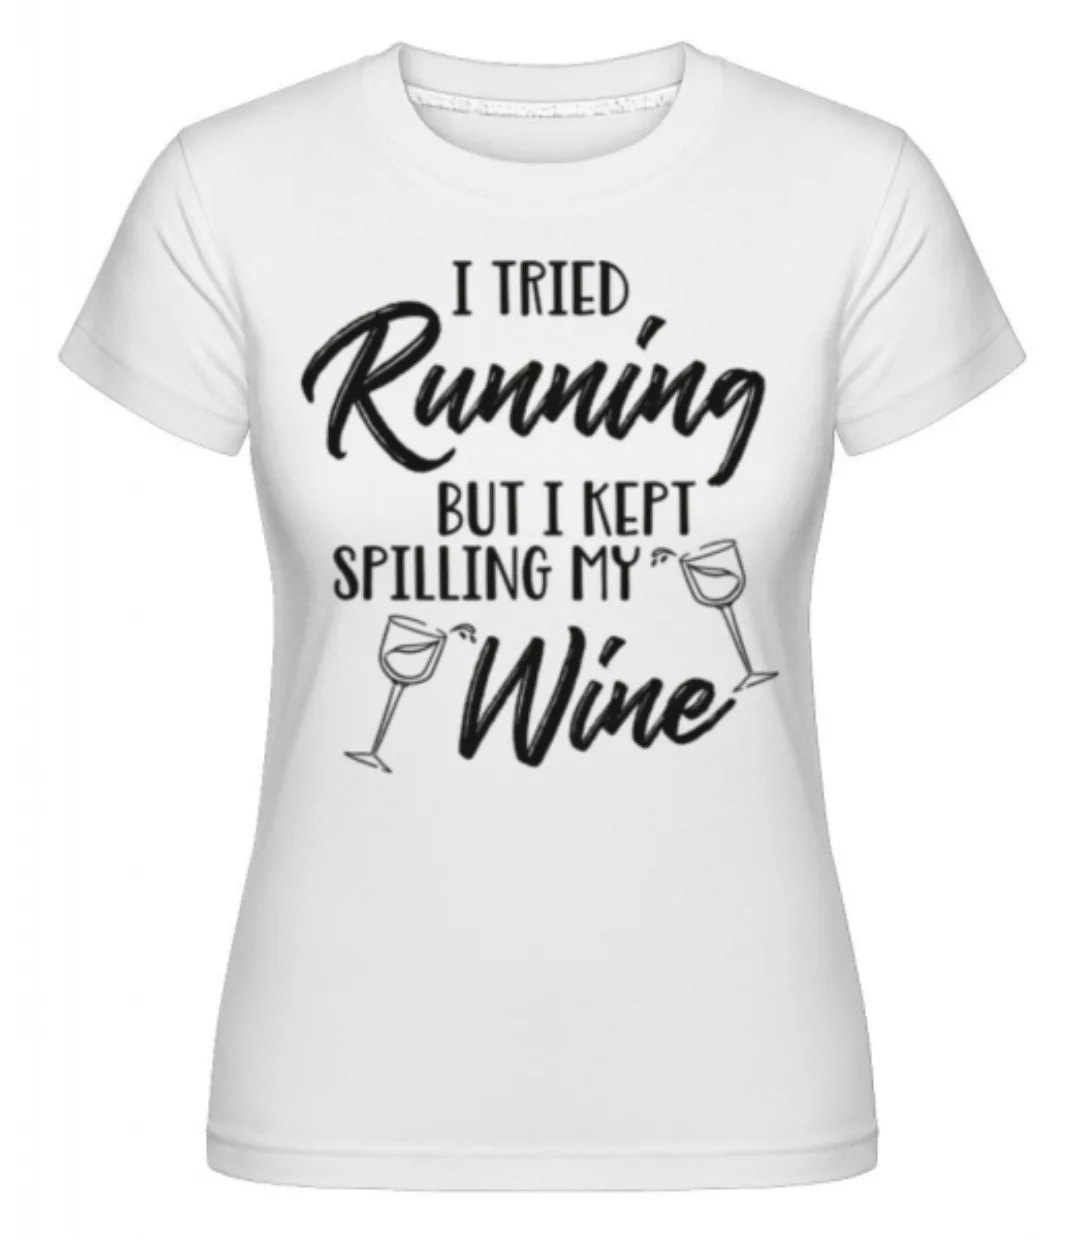 Tried Running But The Wine Kept Spilling · Shirtinator Frauen T-Shirt günstig online kaufen